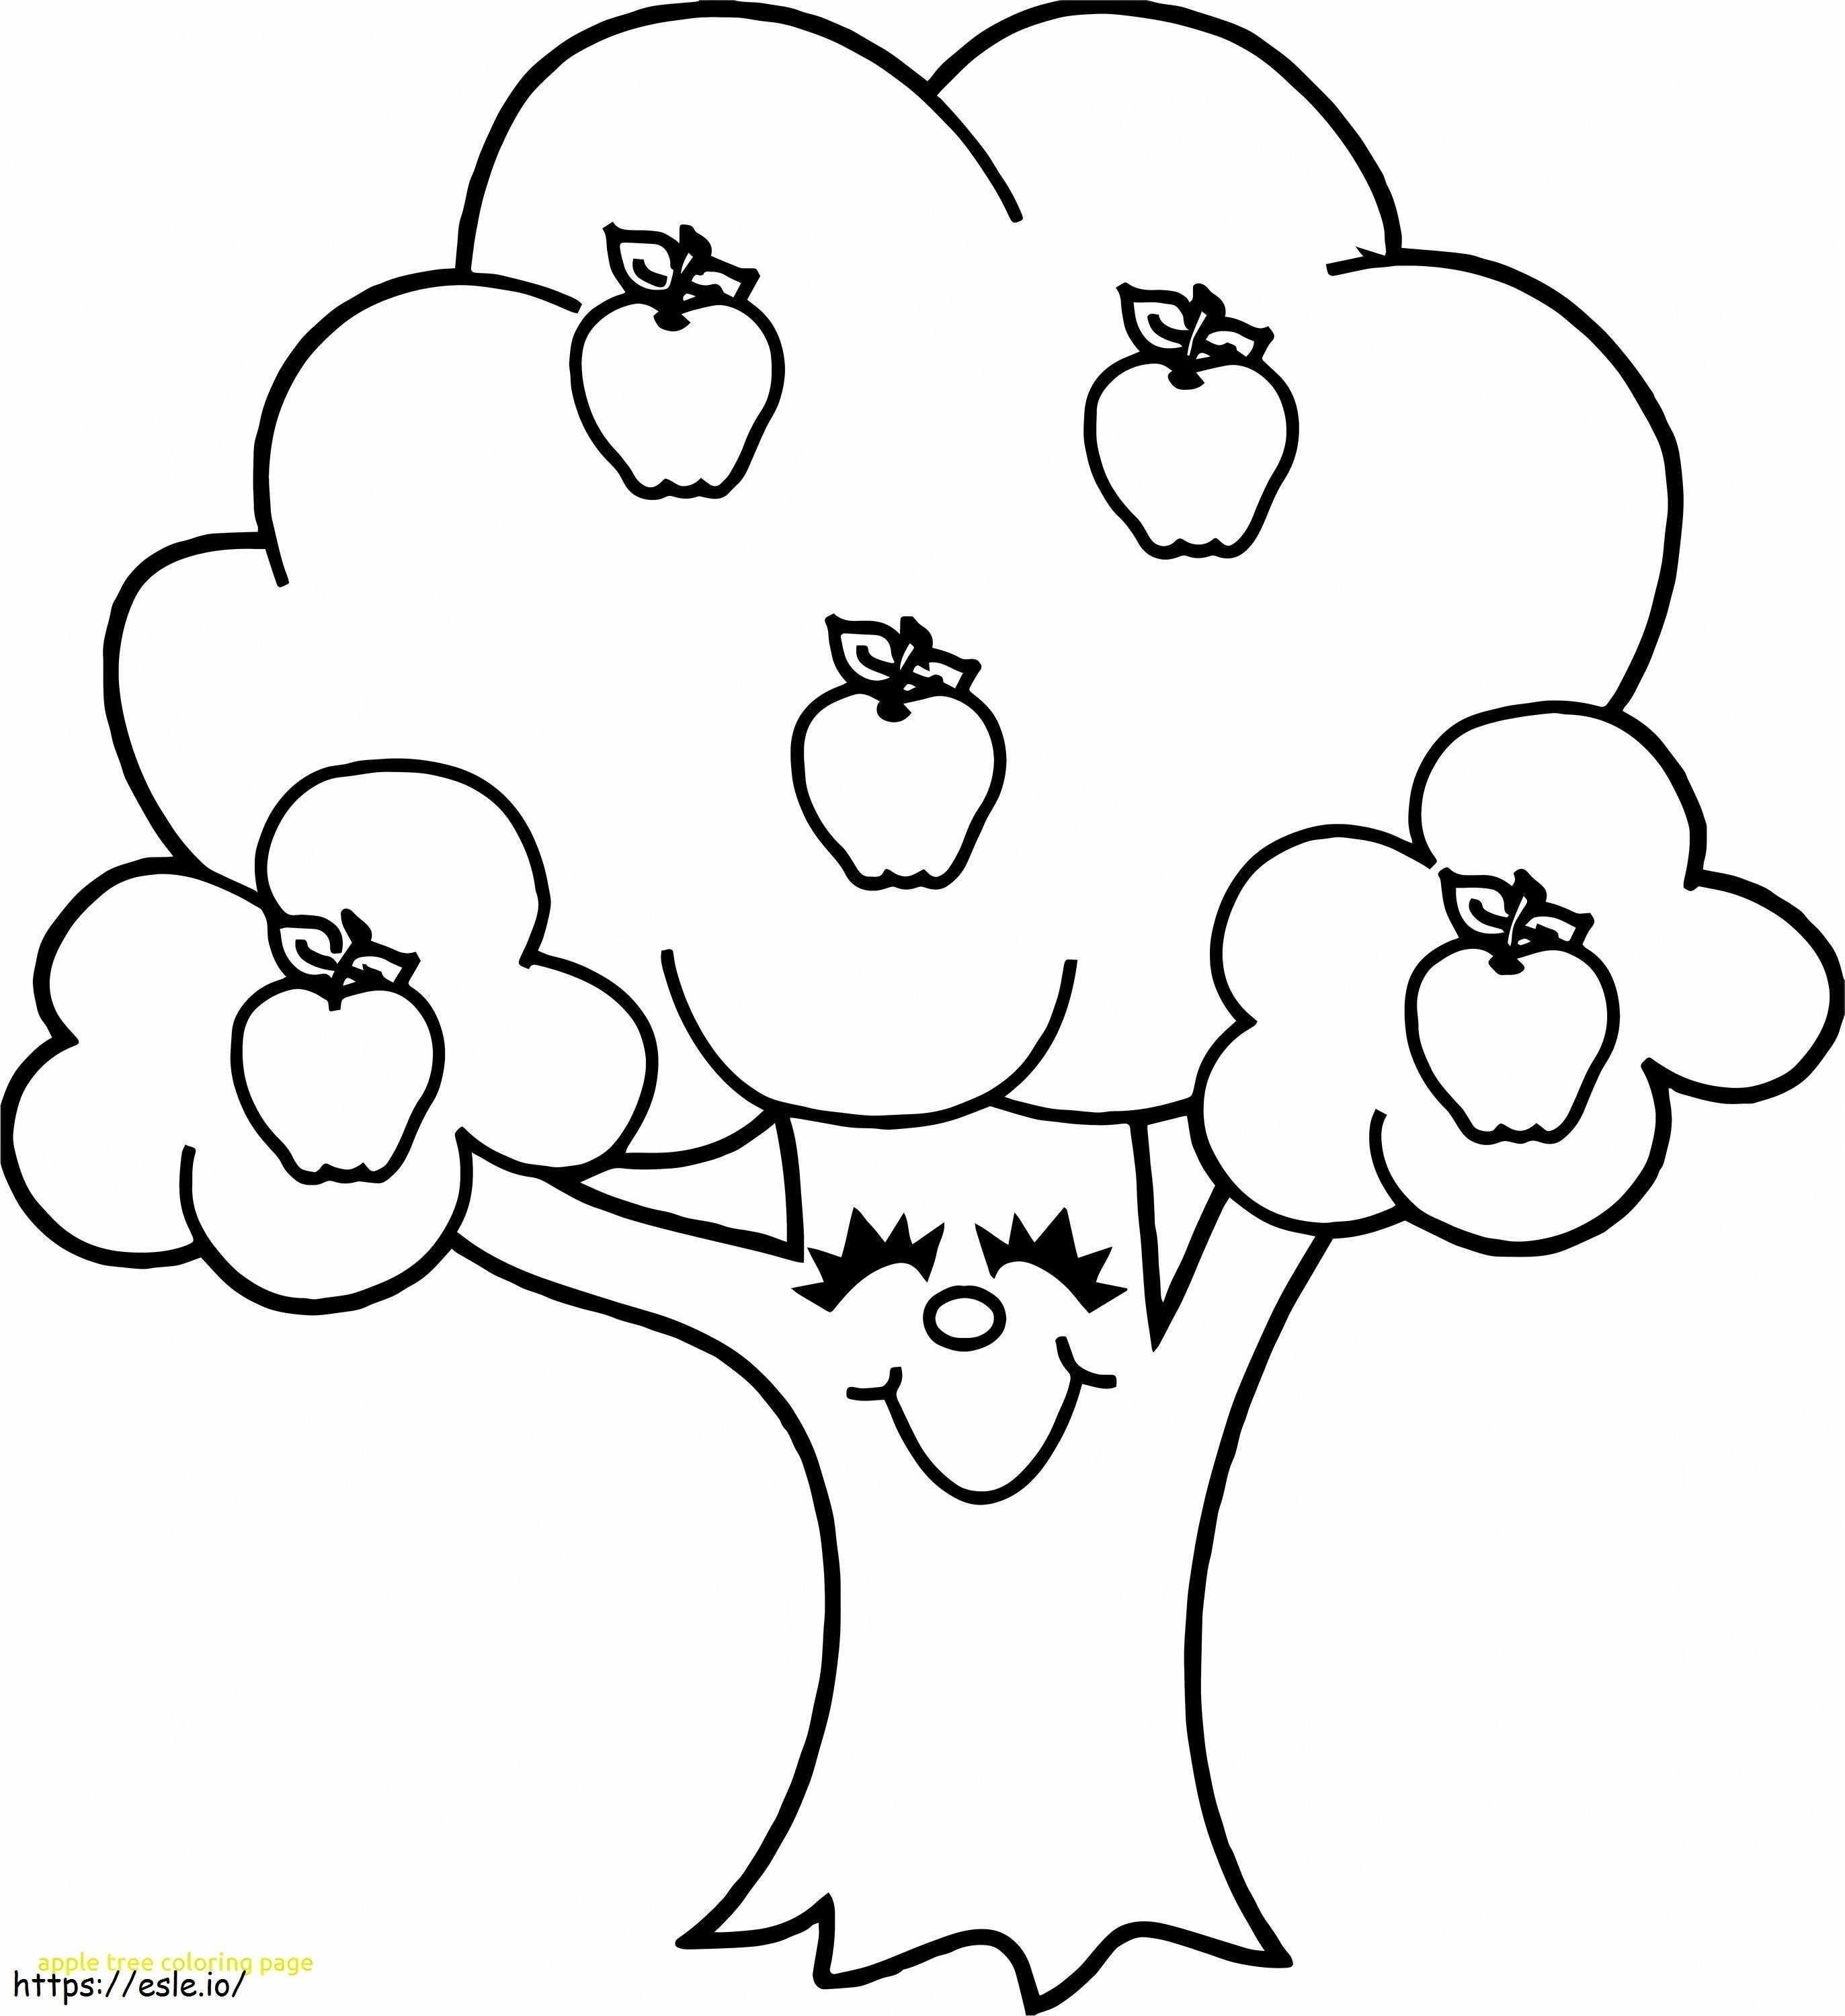 1544147602 Pełna jabłoń z zabawnymi napisami kolorowanka